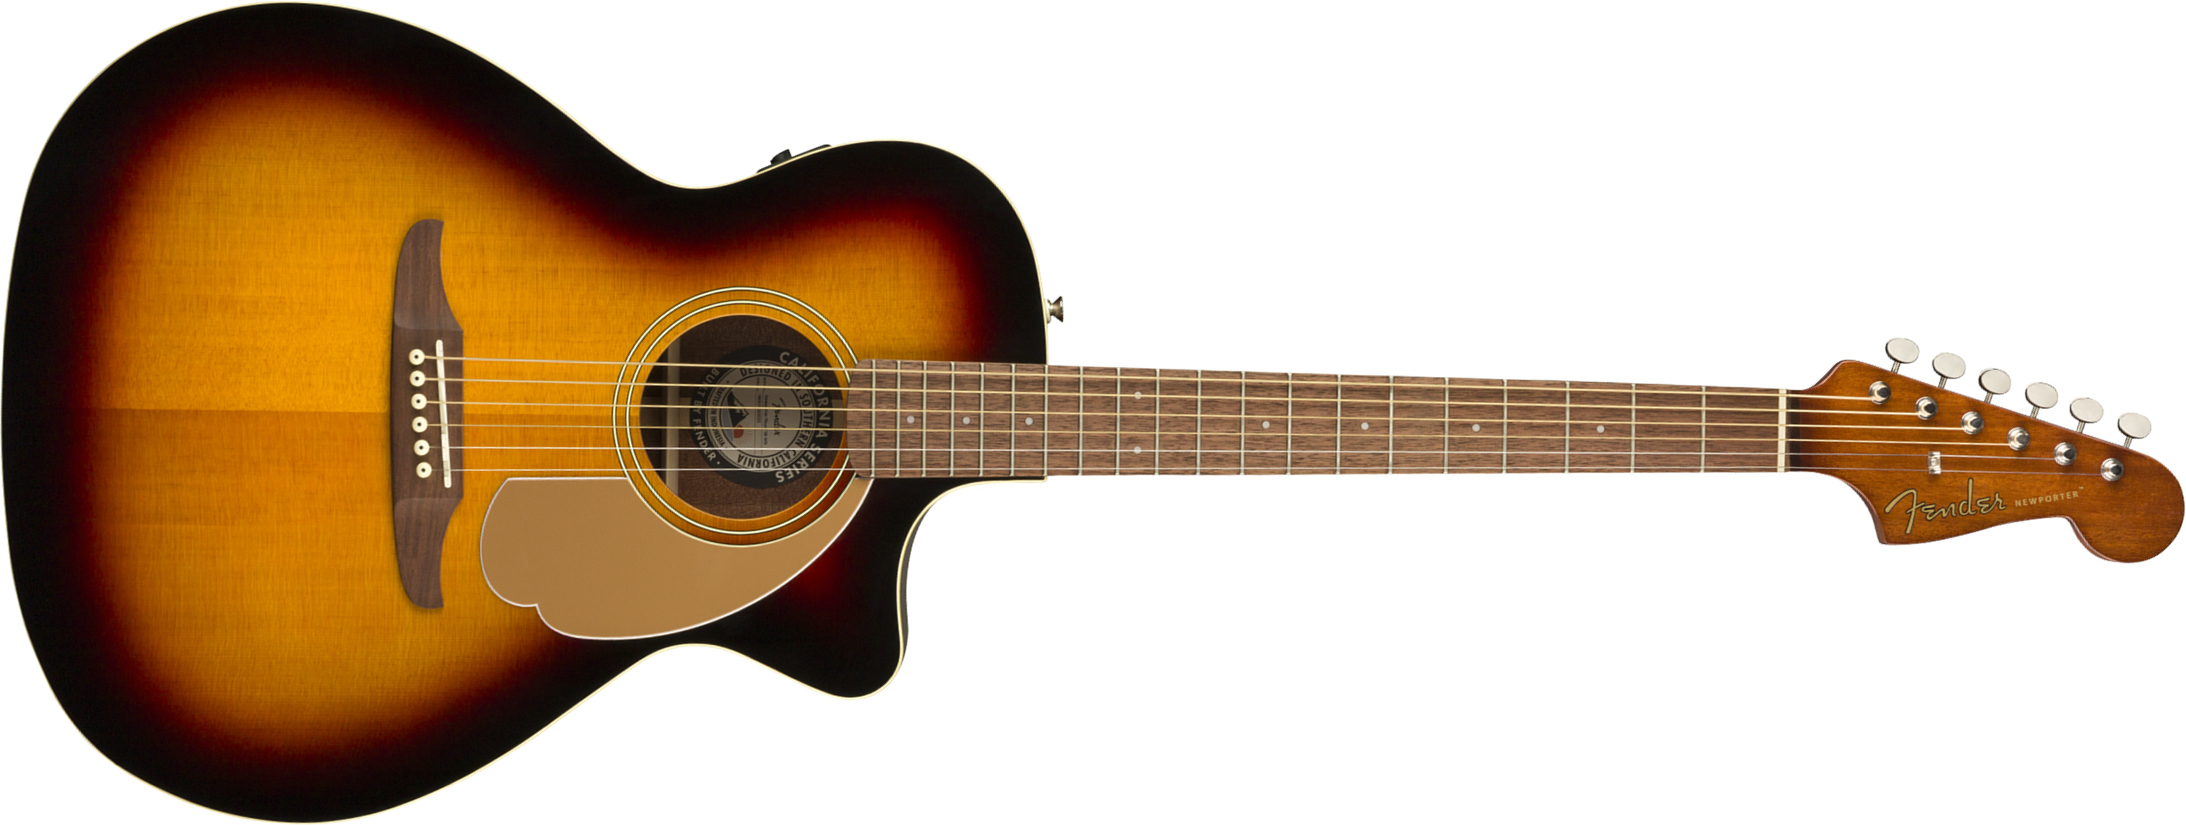 Fender Newporter Player Auditorium Cw Epicea Acajou Wal - Sunburst - Electro acoustic guitar - Main picture